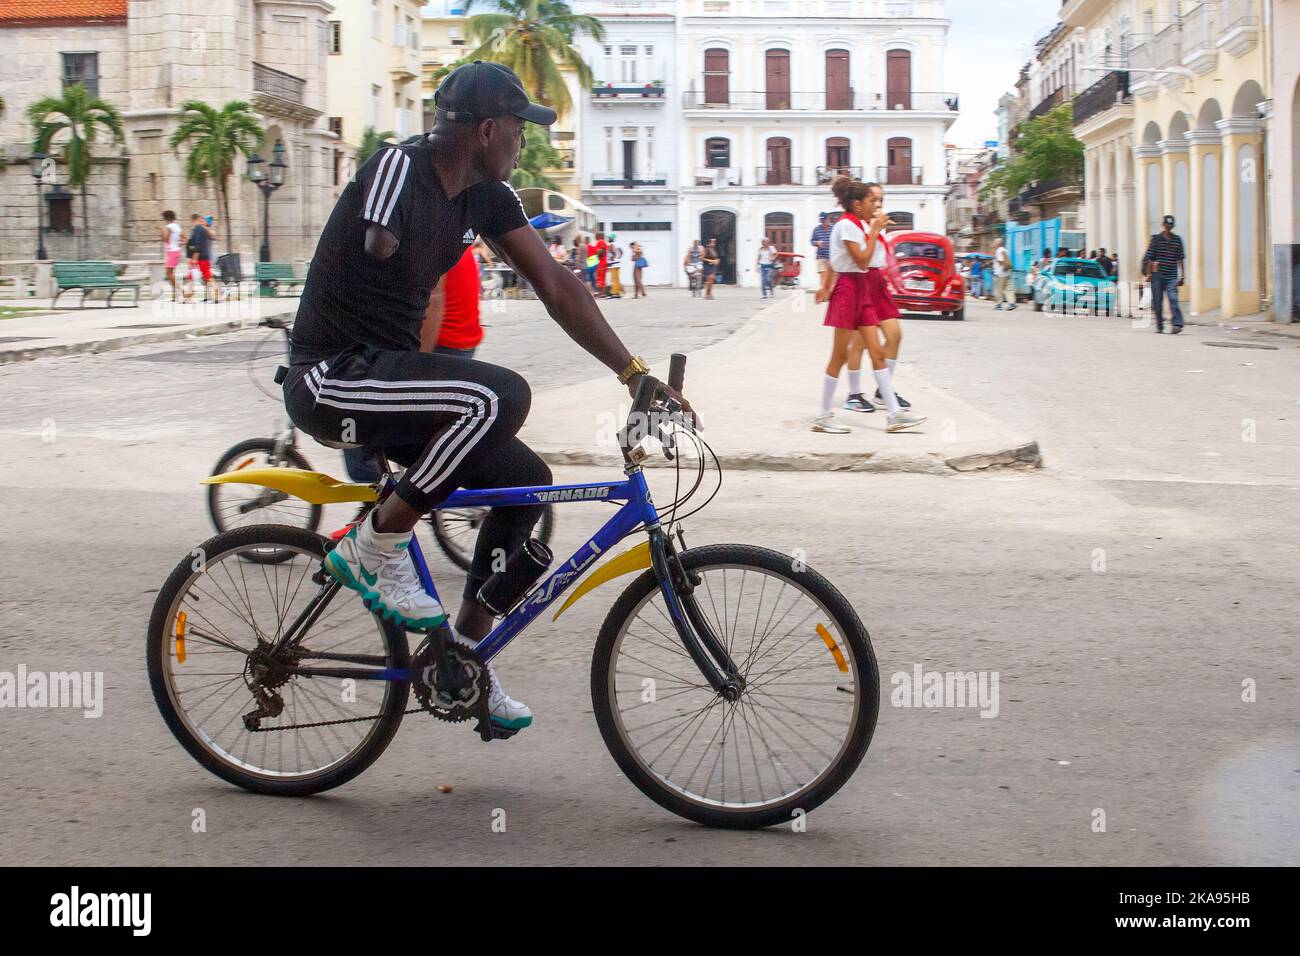 Un homme afro-caraïbe cubain vivant avec un handicap fait un vélo tandis que les étudiants pionniers en uniforme marchent en arrière-plan Banque D'Images